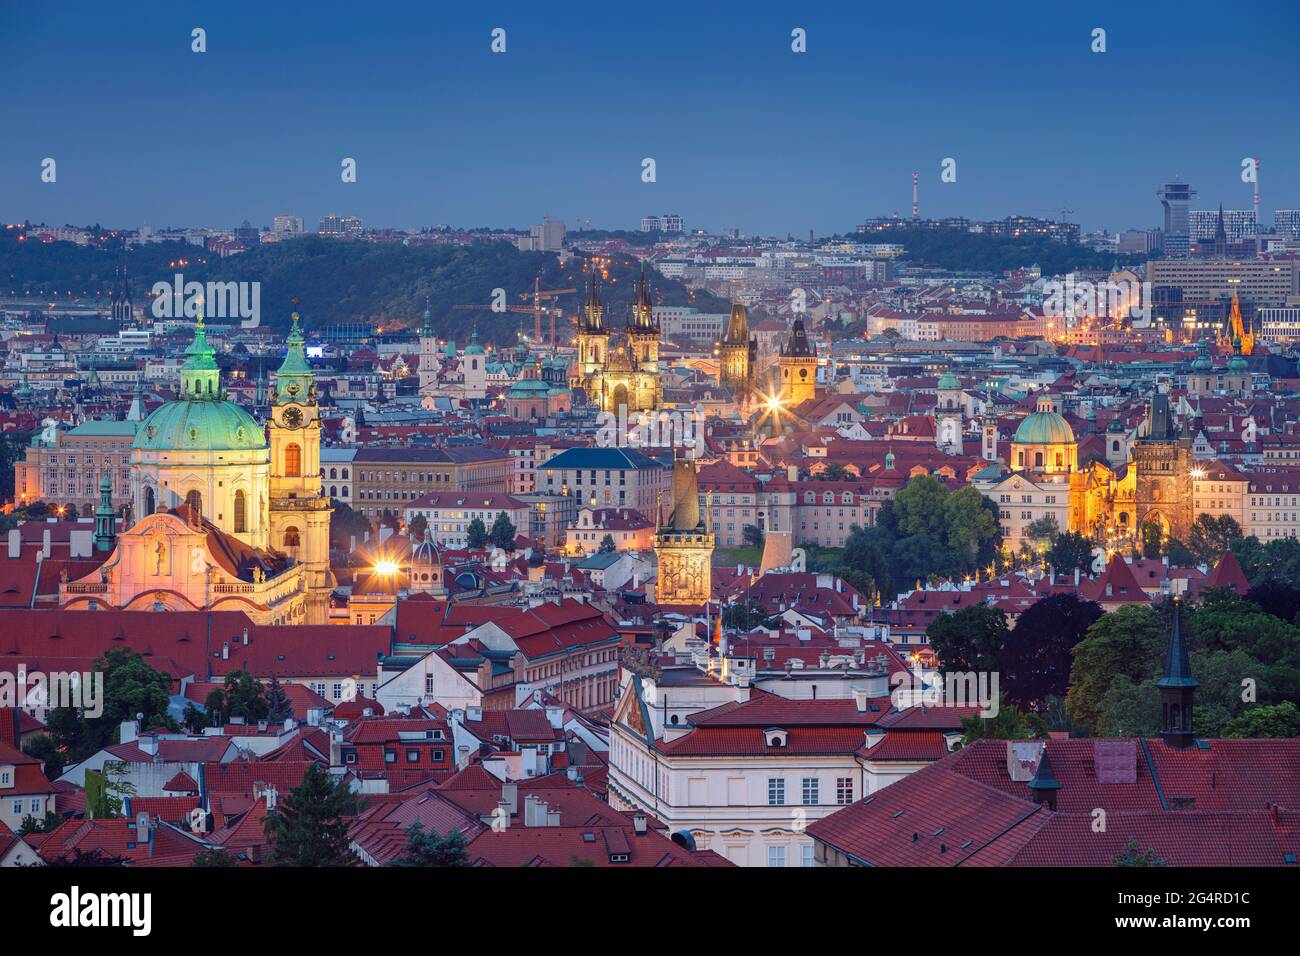 Vieille ville de Prague. Image du paysage urbain aérien de Prague, capitale de la République tchèque avec l'église notre-Dame avant Tyn, la tour du pont de la vieille ville et P Banque D'Images